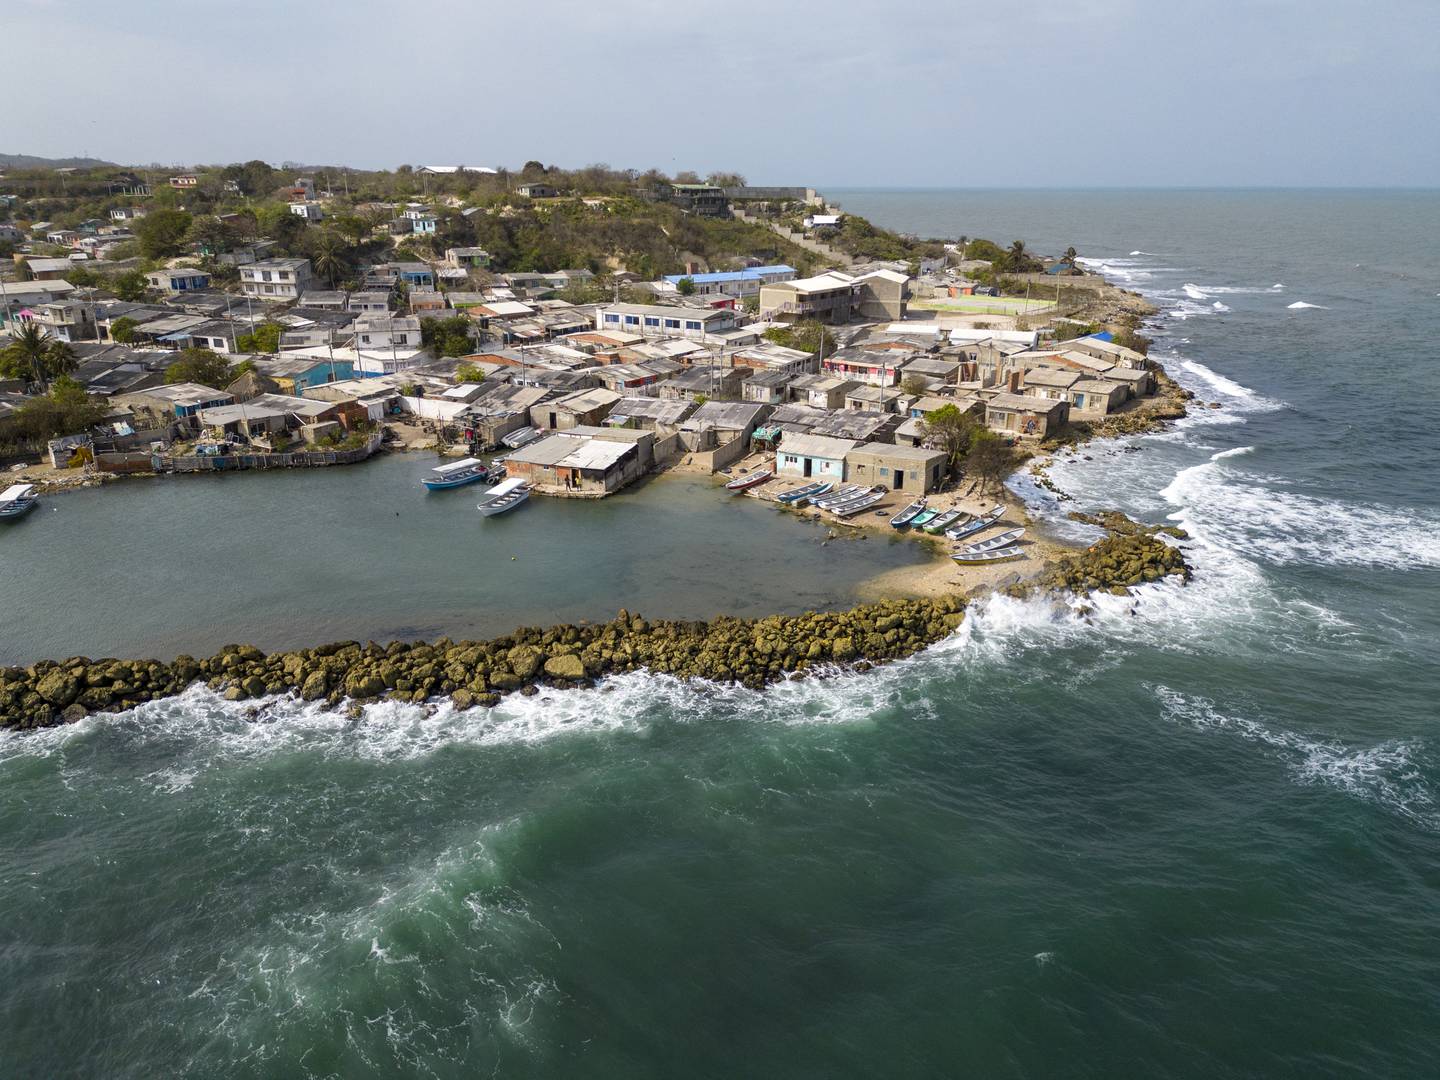 Las autoridades de Cartagena están construyendo 4,5 kilómetros de espolones o barreras de piedra para mitigar el impacto de las olas y proteger los barrios de la inundación, afirmando que el 80% de estos estarían en riesgo sin estas medidas.